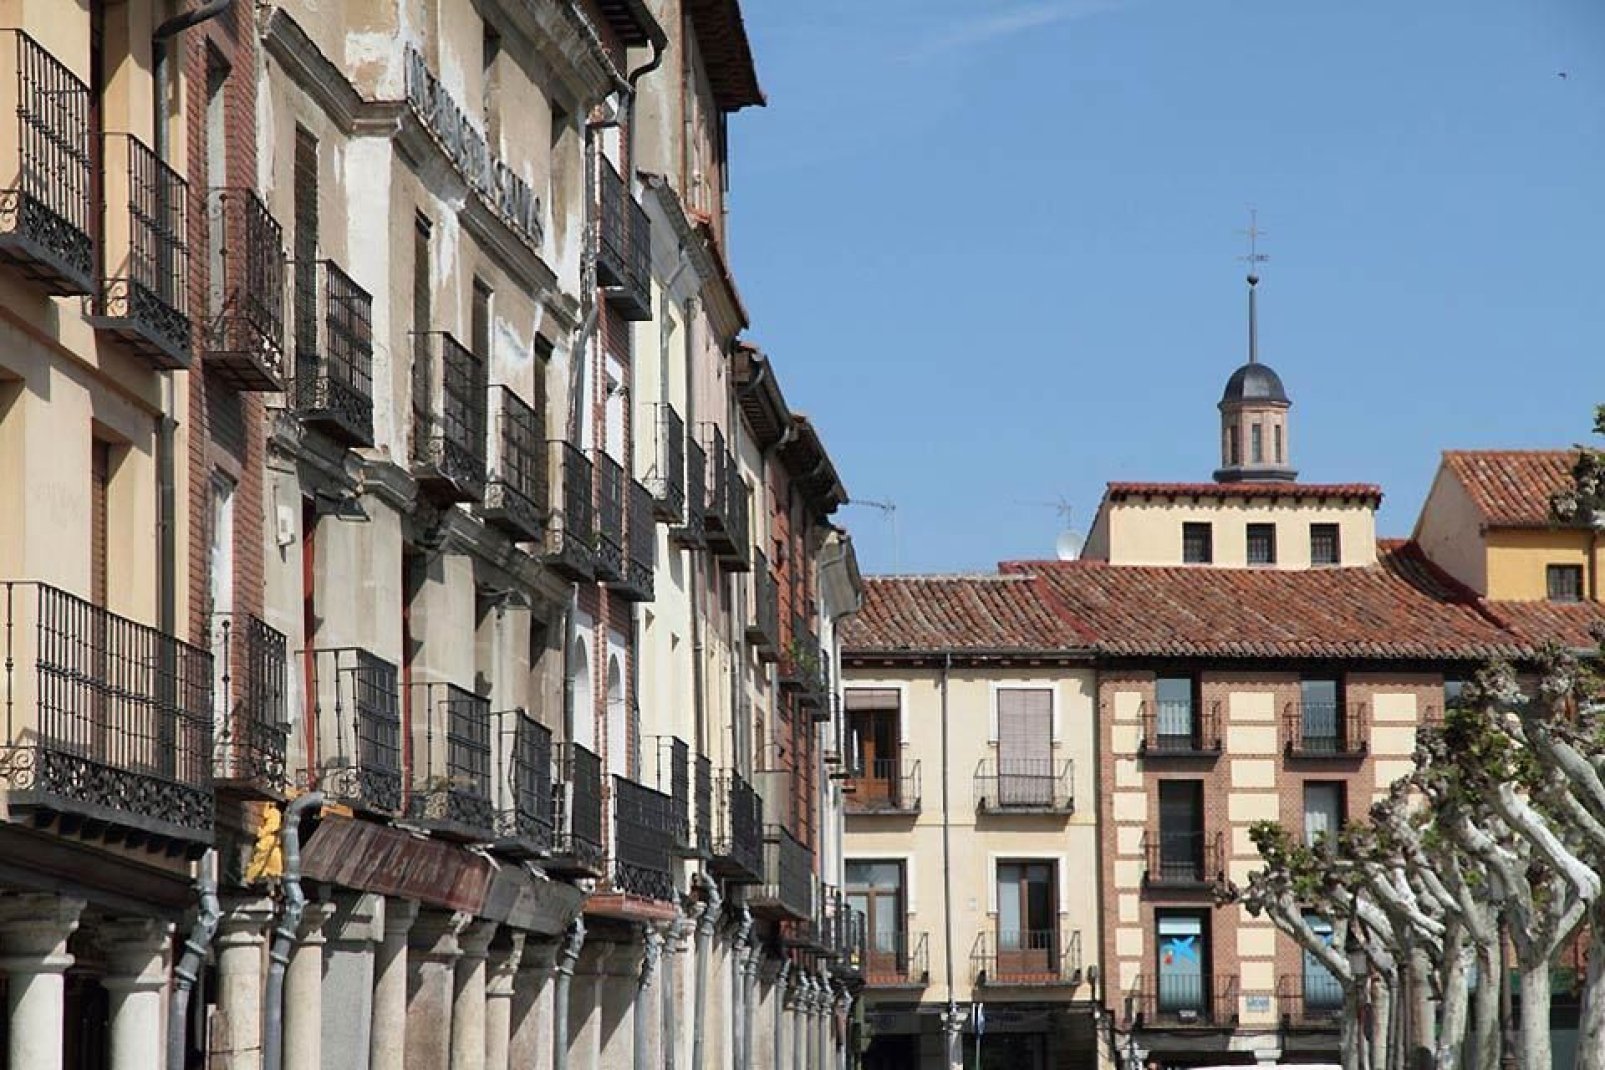 An diesem Platz beginnt die Calle Mayor: Es handelt sich um die längste Straße von ganz Spanien (sie ist ungefähr 1 km lang).